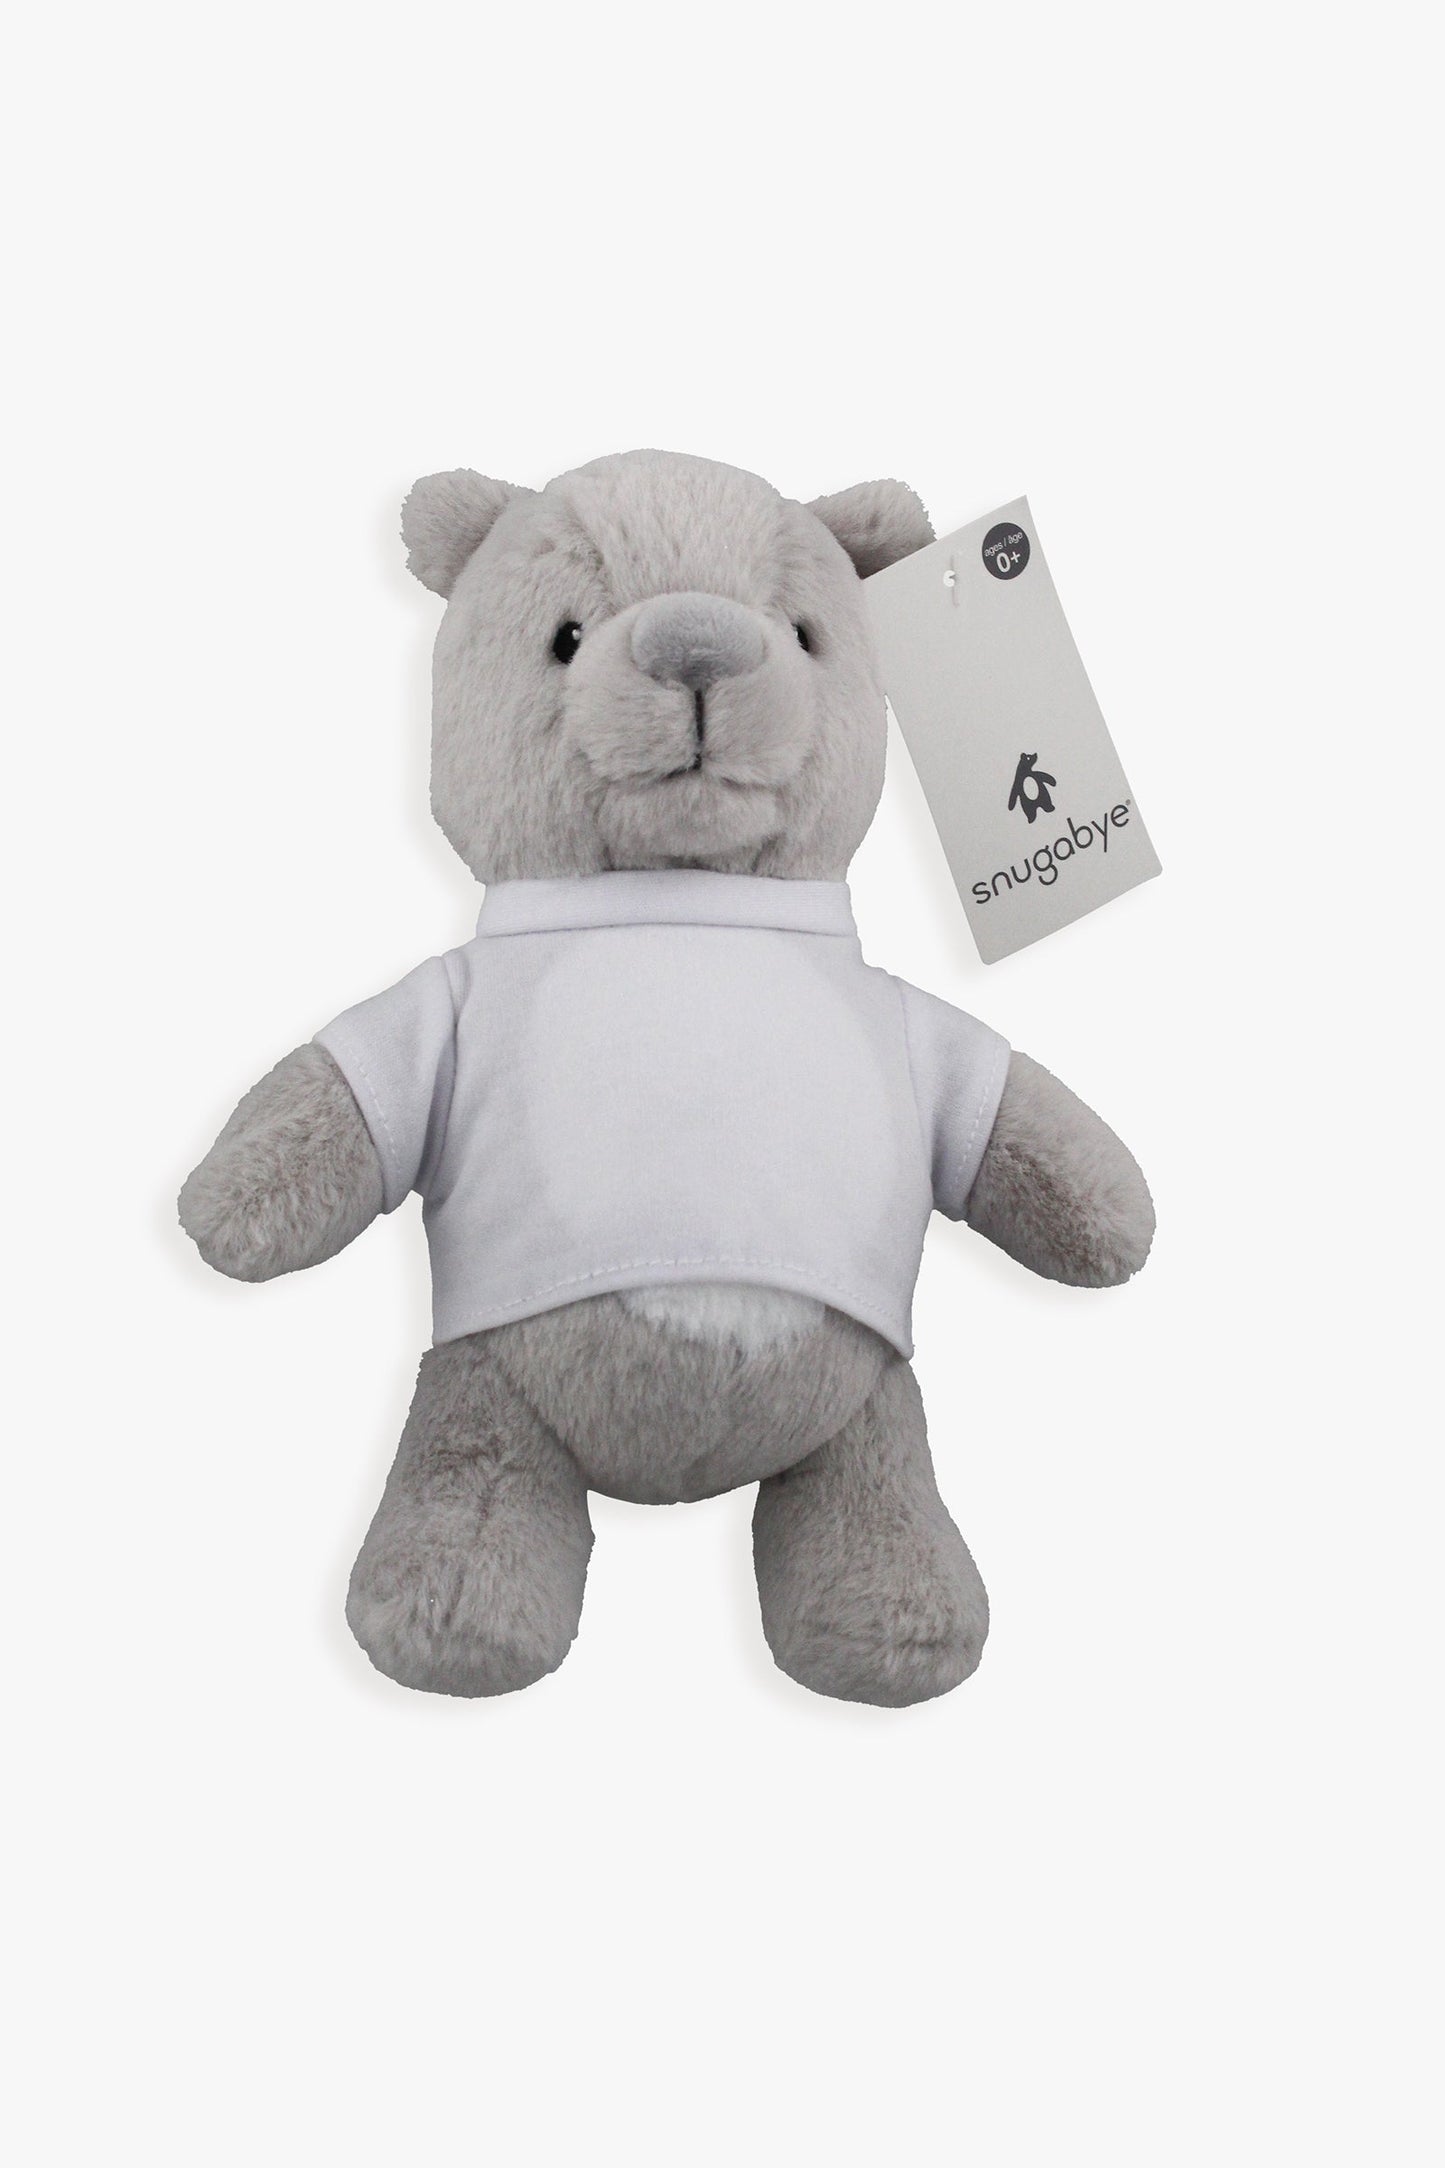 Customizable Plush Teddy Bear